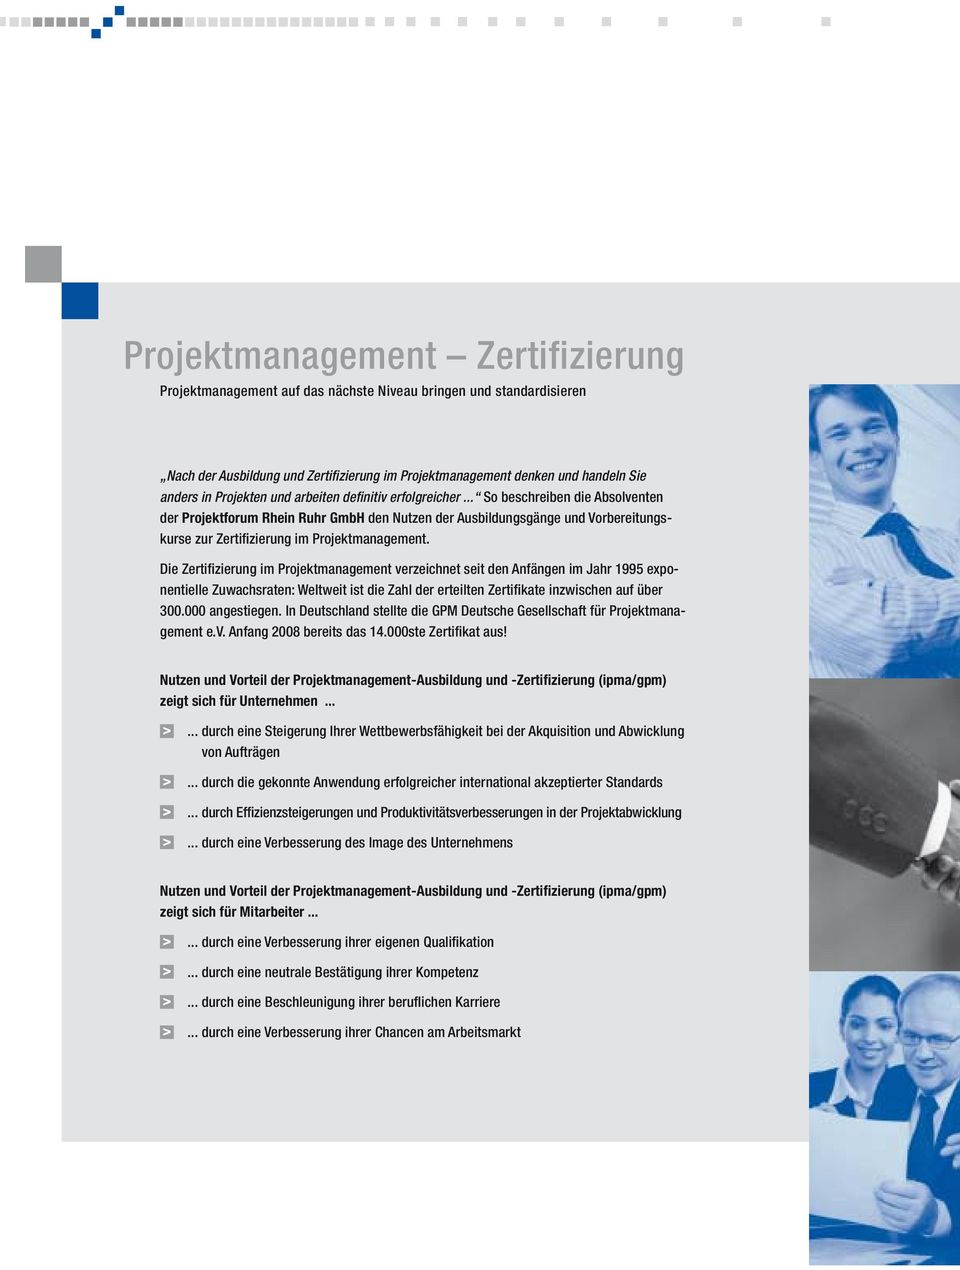 .. So beschreiben die Absolventen der Projektforum Rhein Ruhr GmbH den Nutzen der Ausbildungsgänge und Vorbereitungskurse zur Zertifizierung im Projektmanagement.